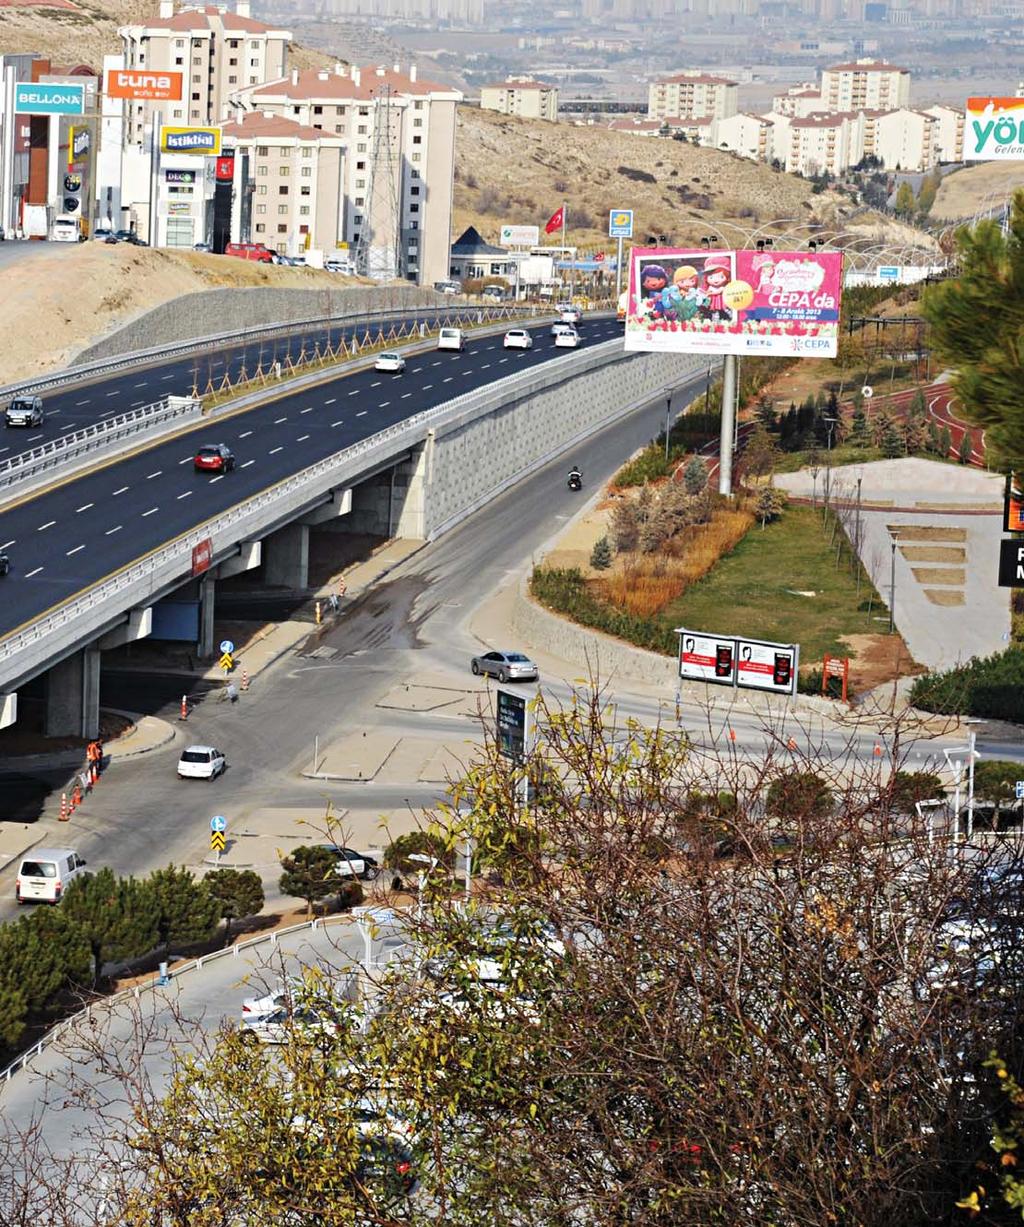 Haber 5 alt üst geçit Tansel Semerci Ankara Büyükşehir Belediye Başkanı Melih Gökçek, Başkent i modern cadde ve bulvarlarla donatarak örnek bir kent haline